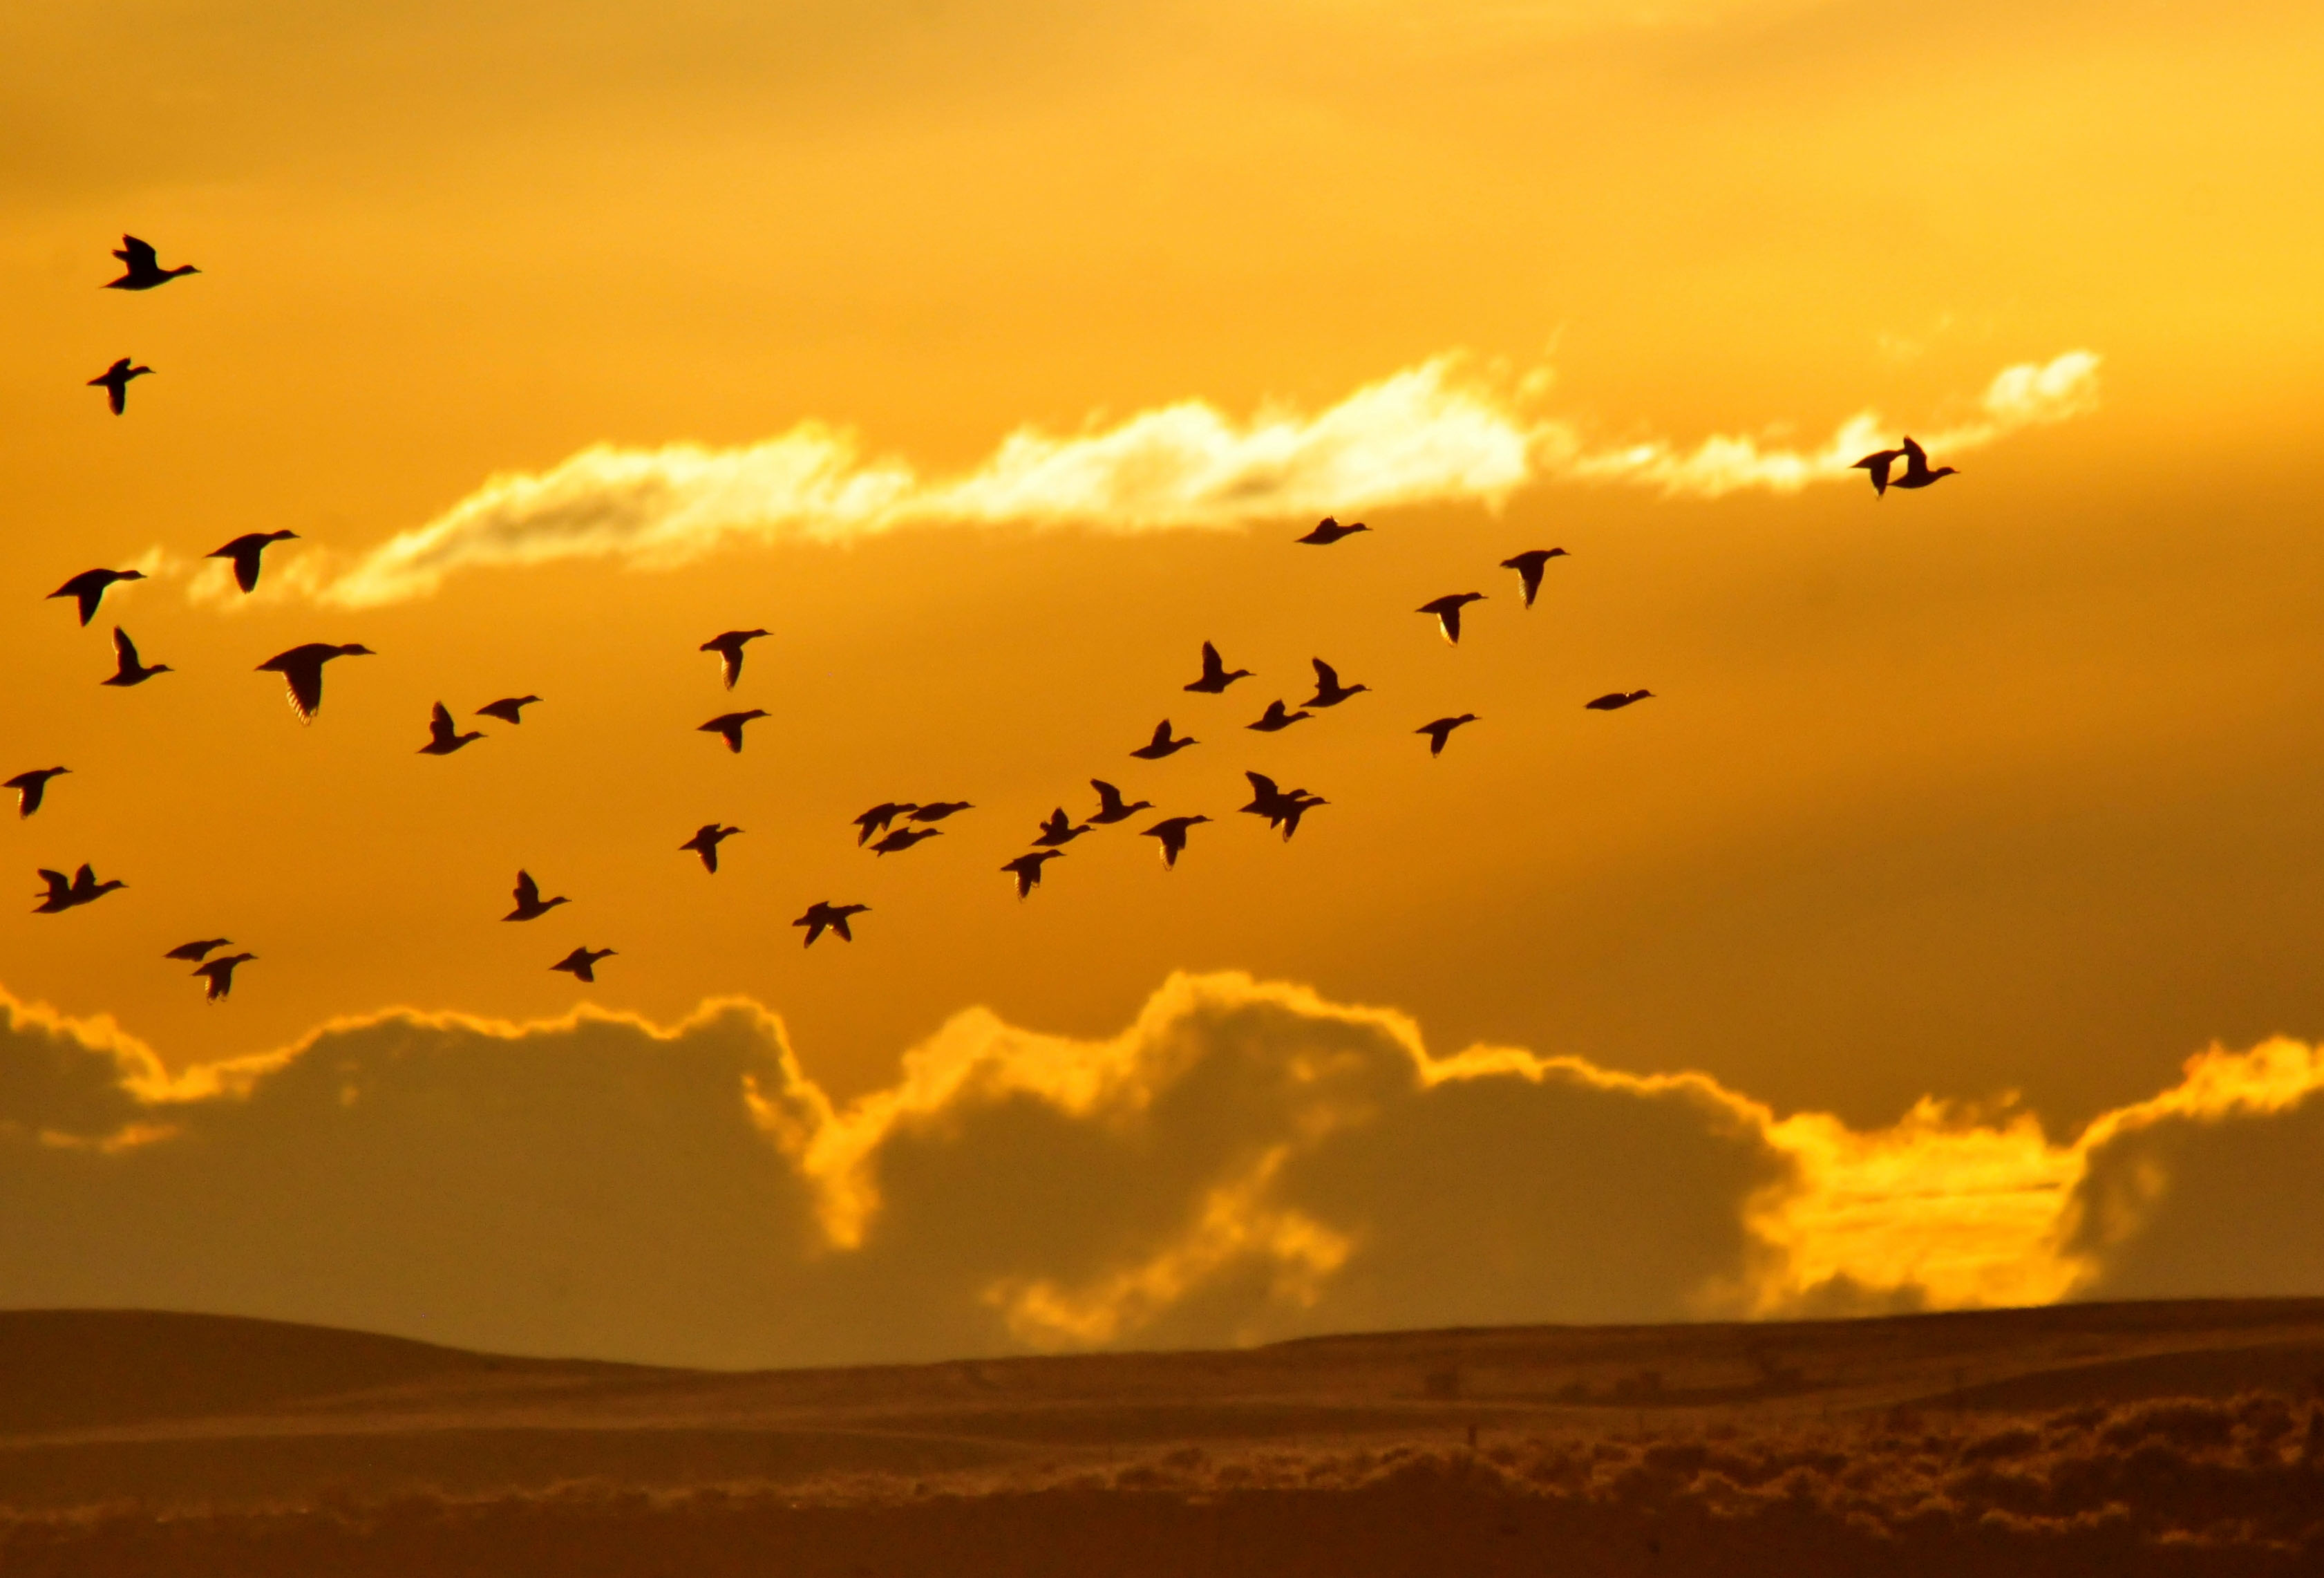 birds in an orange sky